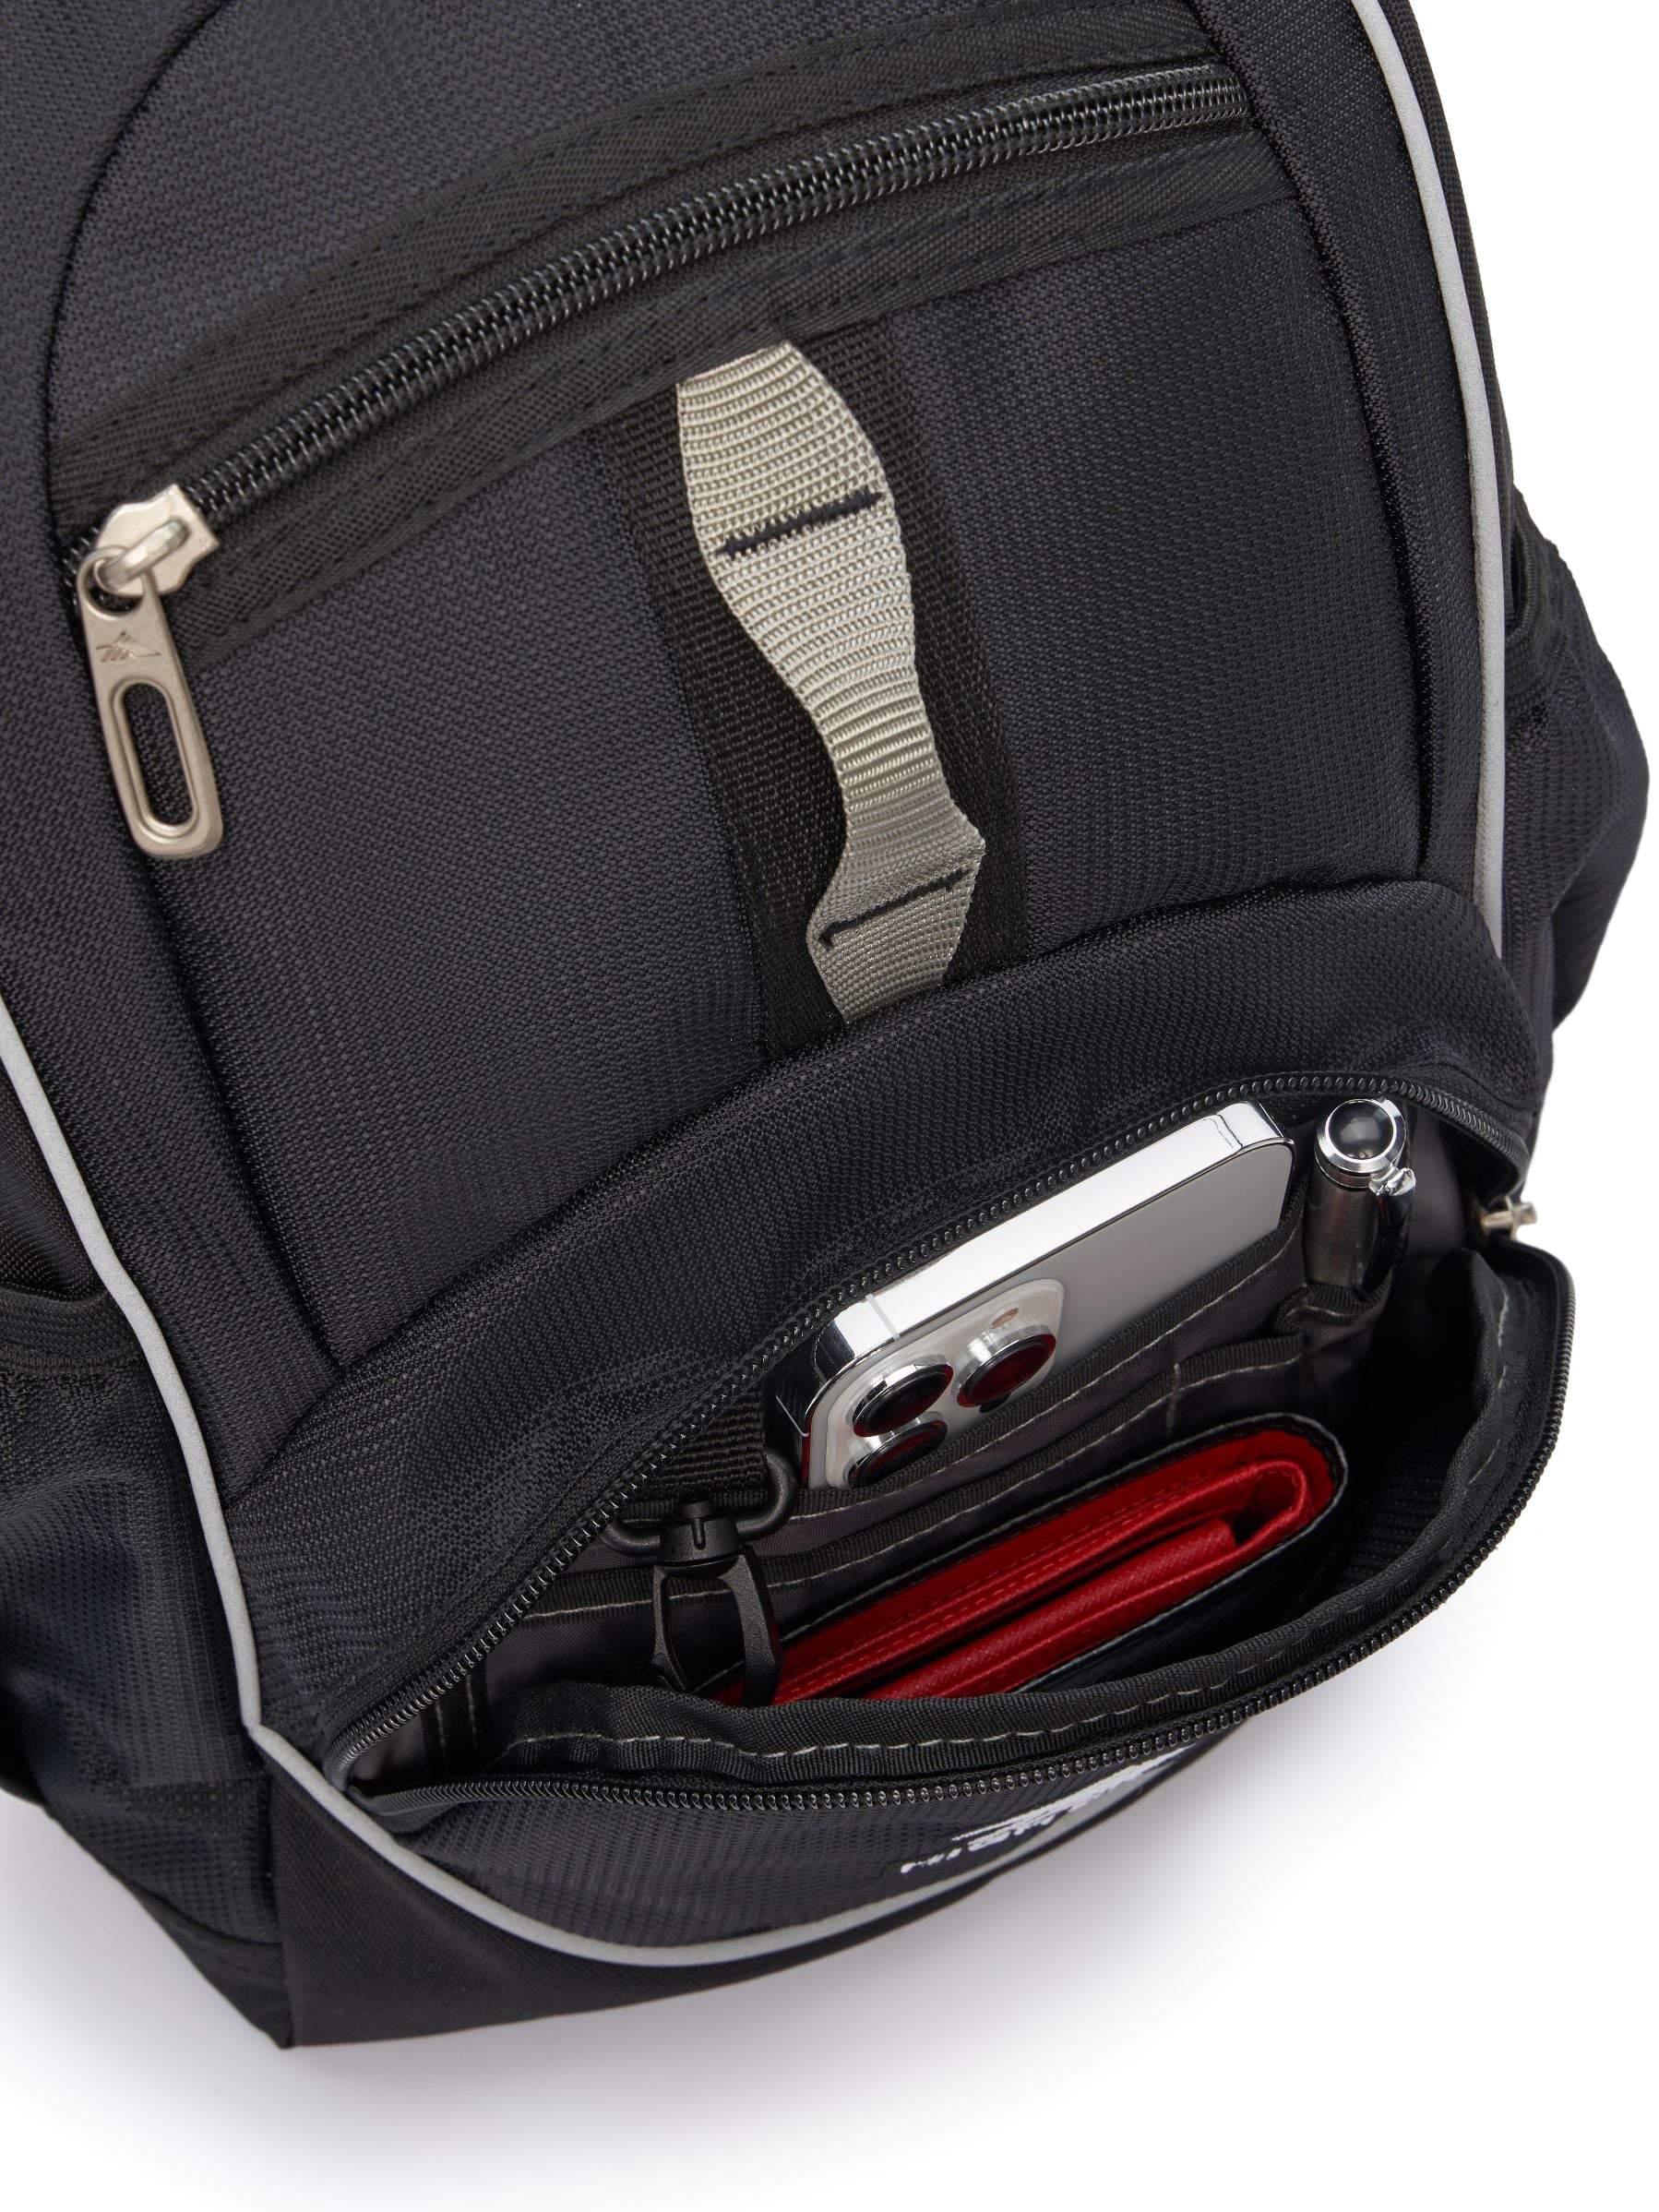 High Sierra - Mini Backpack 2.0 - Black/Silver-5